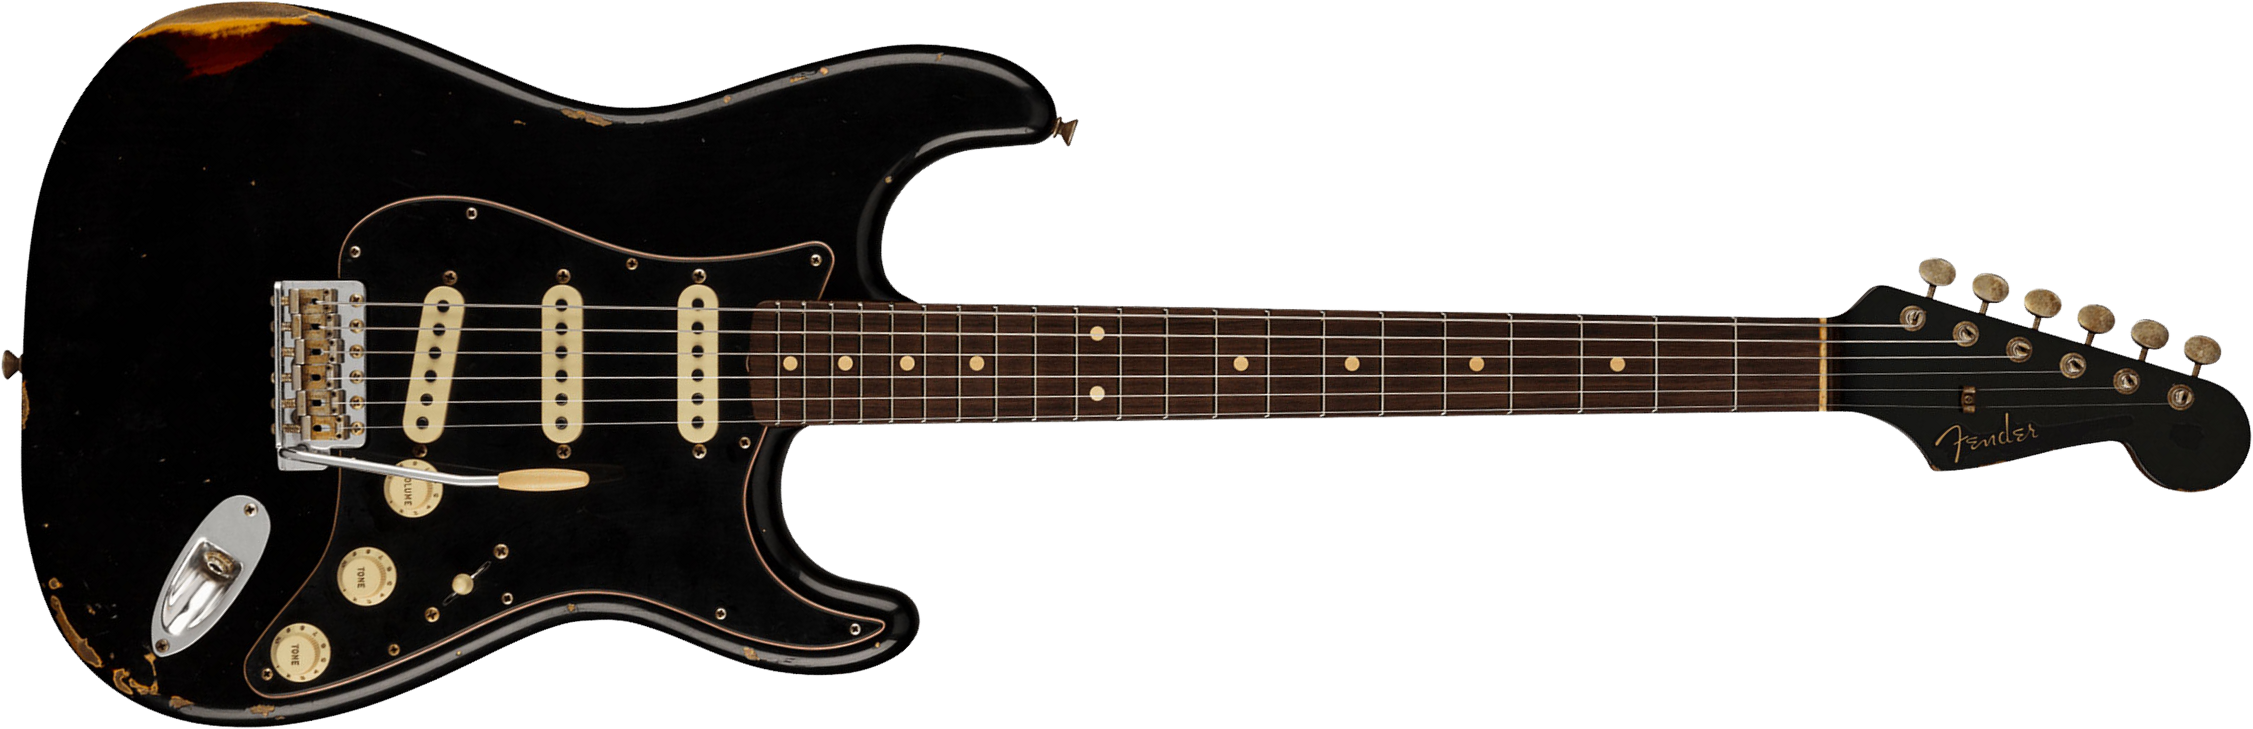 Fender Custom Shop Strat Dual Mag Ii Ltd Usa 3s Trem Rw - Relic Black Over 3-color Sunburst - Guitare Électrique Forme Str - Main picture